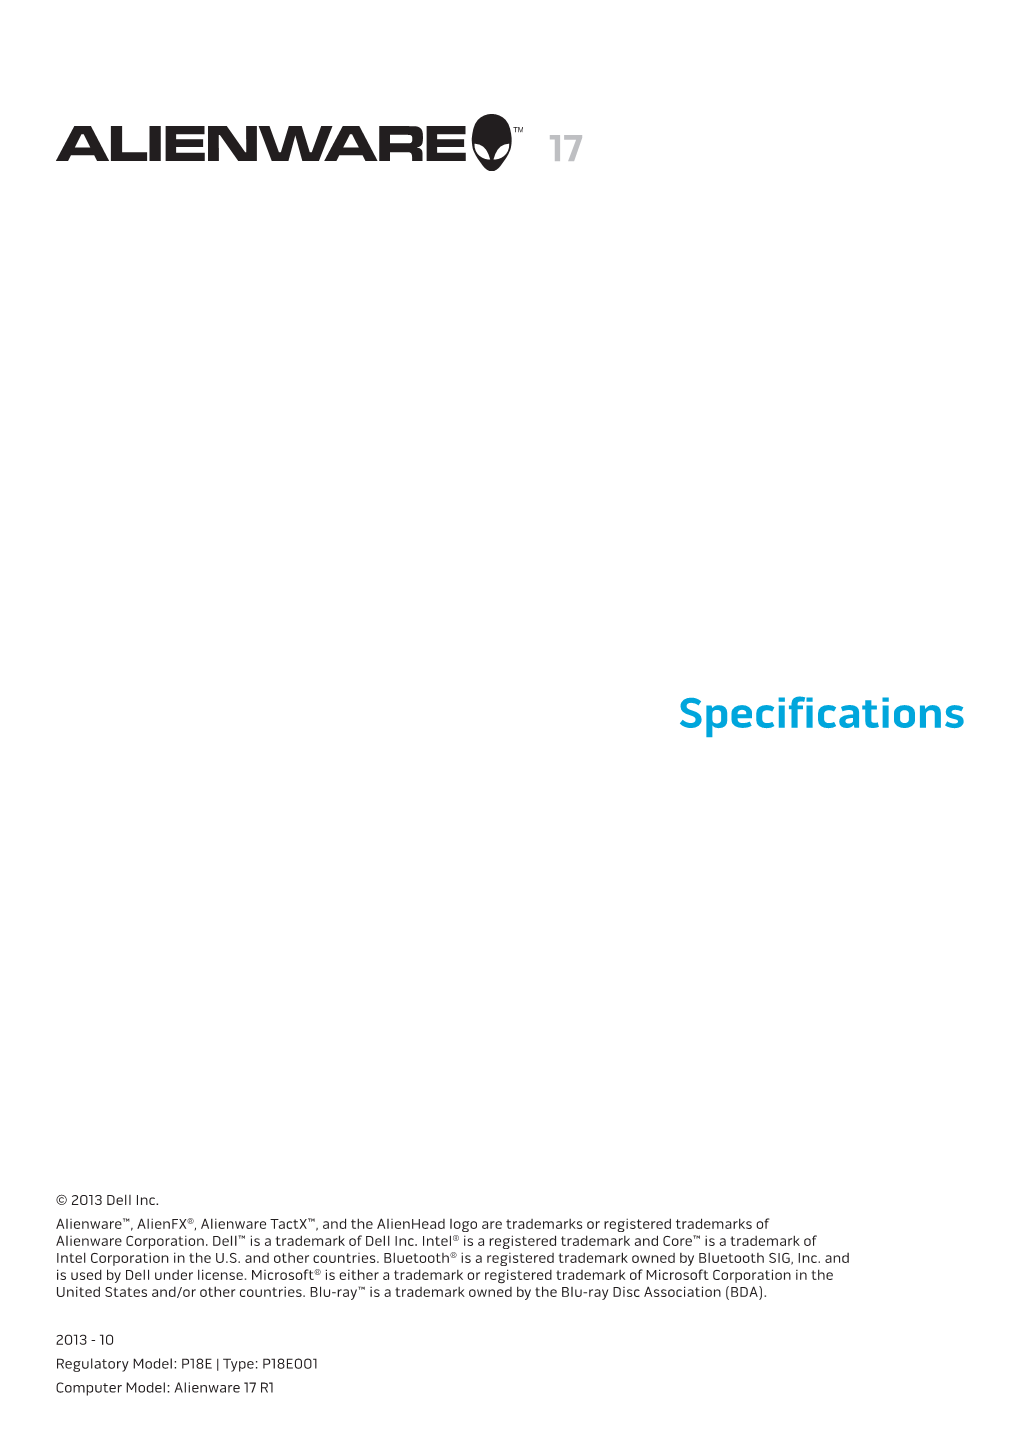 Alienware 17 Specifications